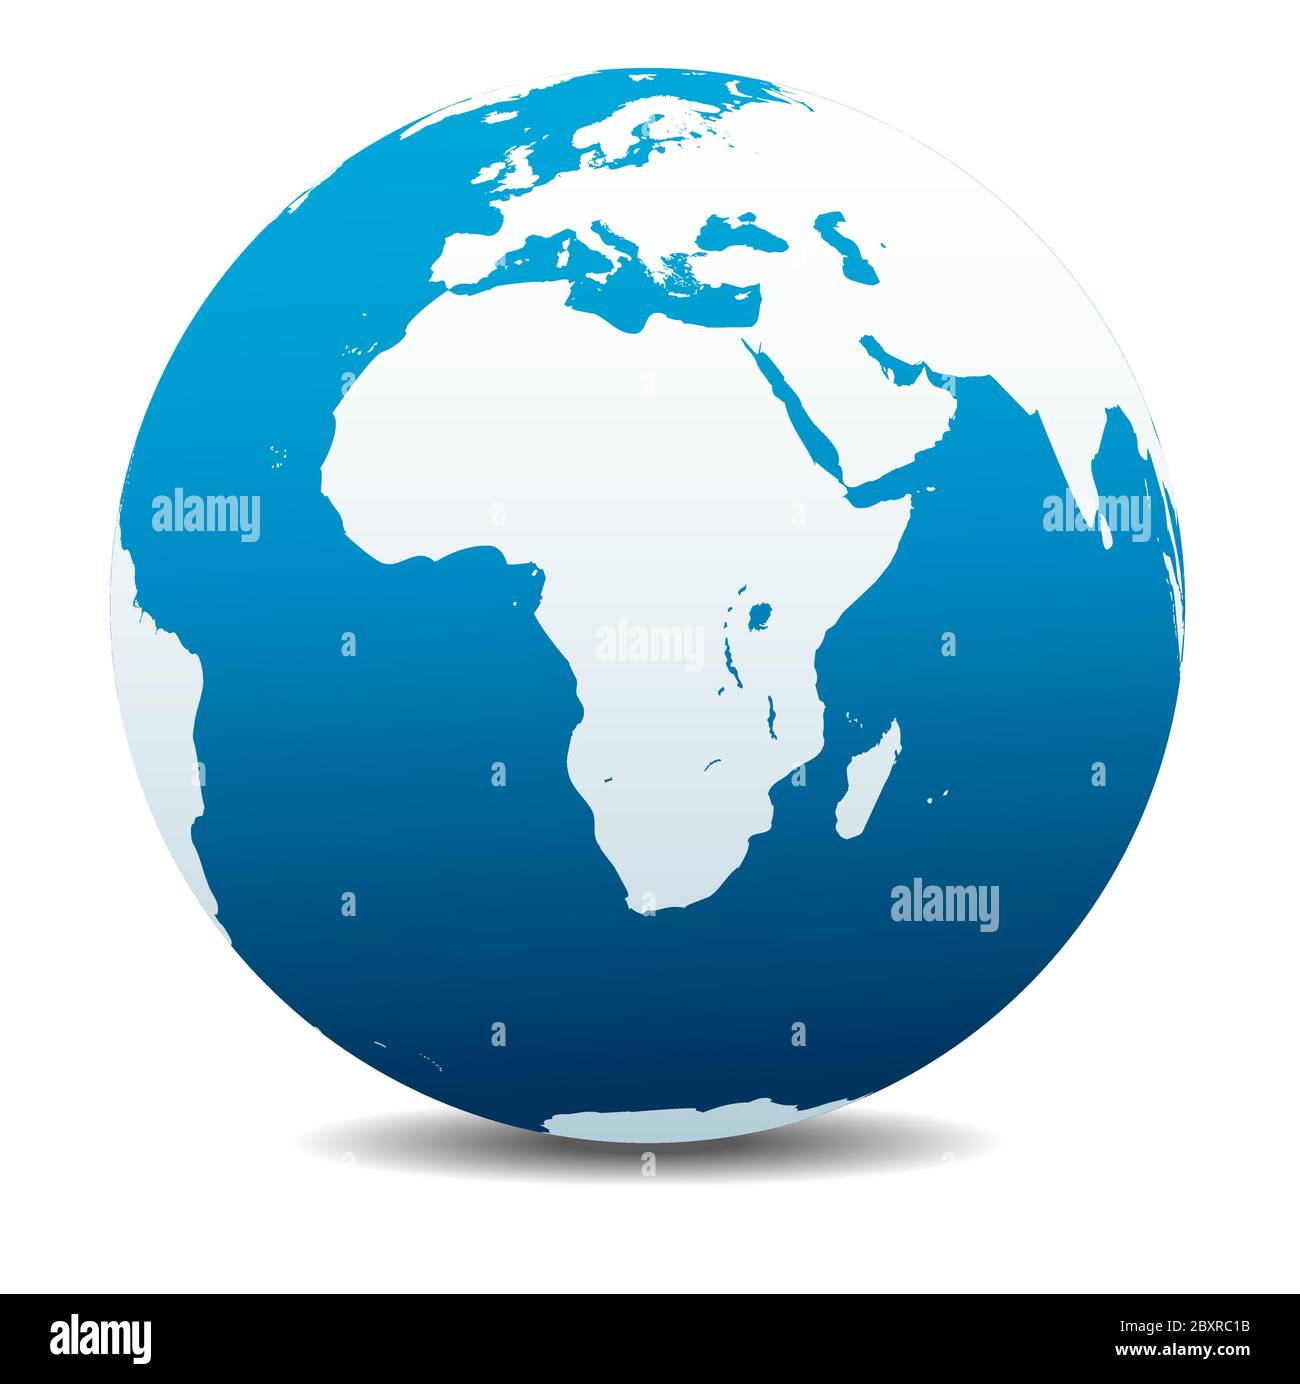 Afrique, Arabie. Icône carte vectorielle du globe terrestre, Terre. Tous les éléments se trouvent sur des calques individuels dans le fichier vectoriel. Illustration de Vecteur